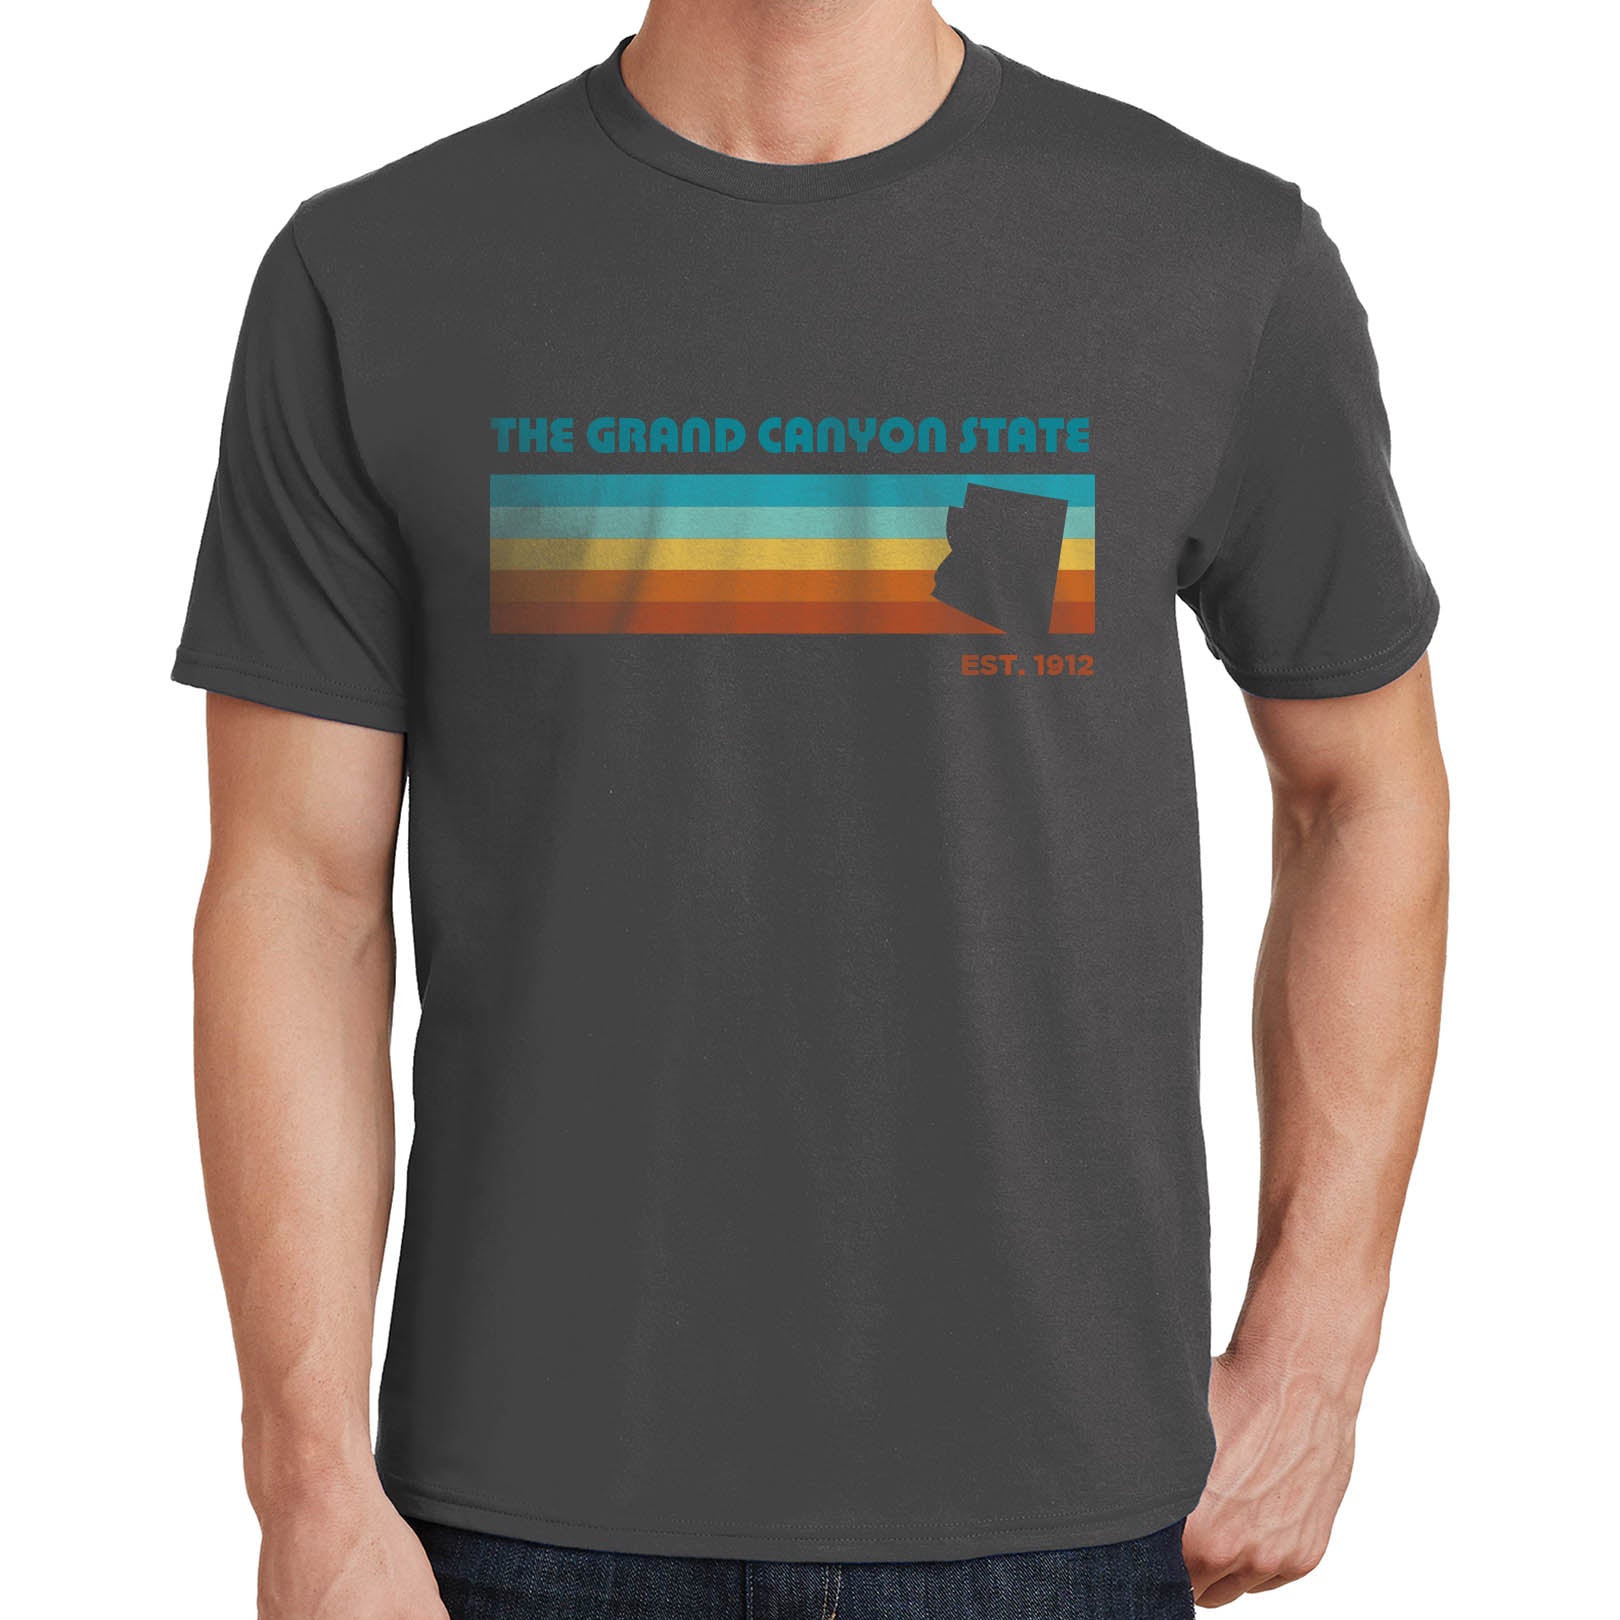 Grand Canyon State T-Shirt Arizona 02685 | eBay